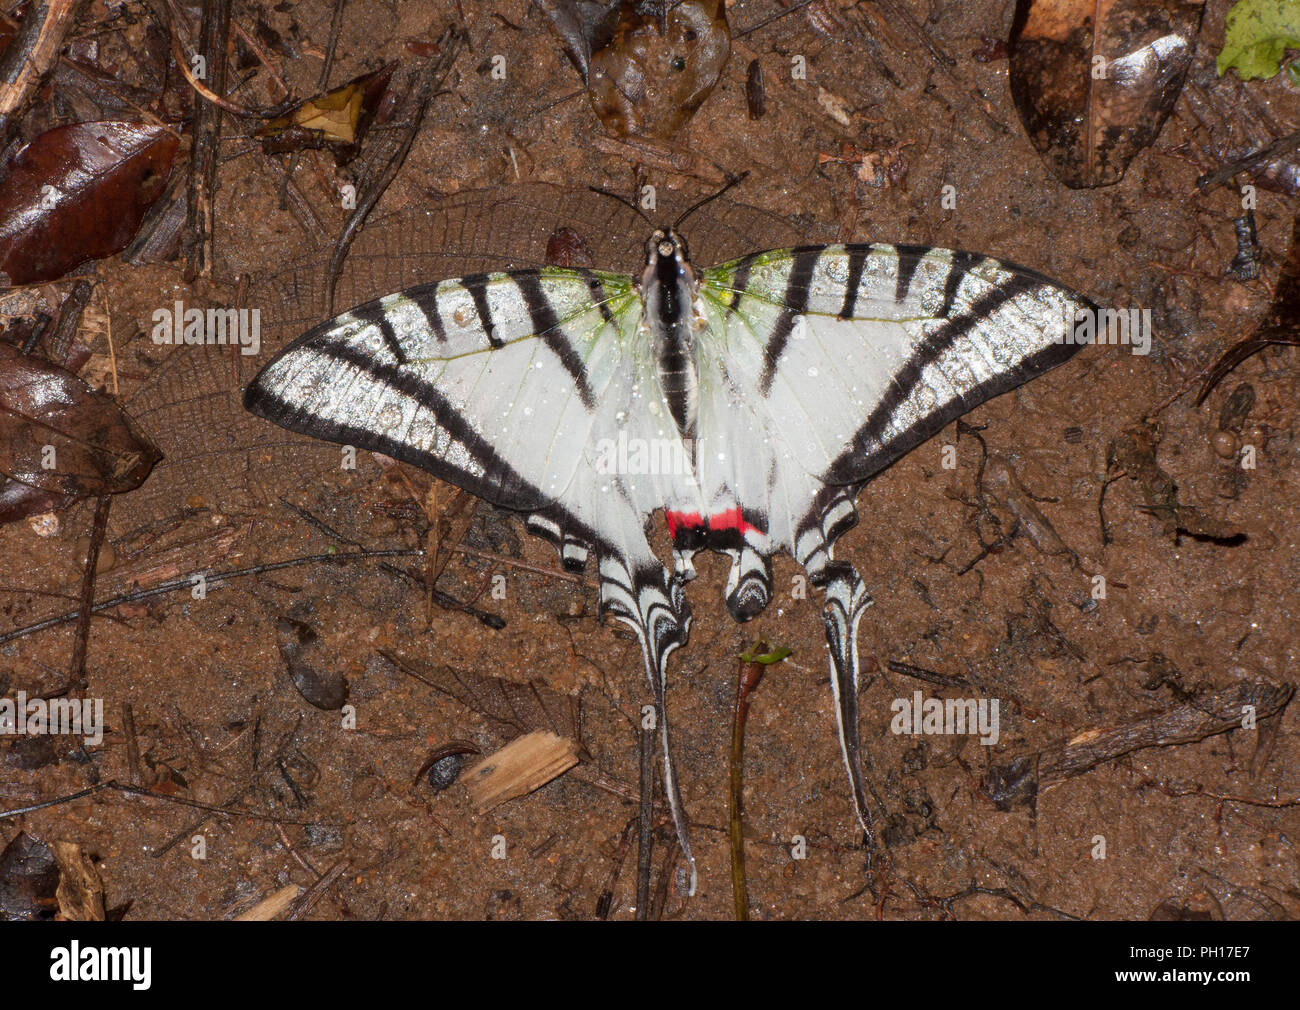 Swallowtail Butterfly, Eutytides molops, seul adulte morts à même le sol forestier, prises d'octobre, la Forêt Tropicale Atlantique, l'État de Rio, au Brésil. Banque D'Images